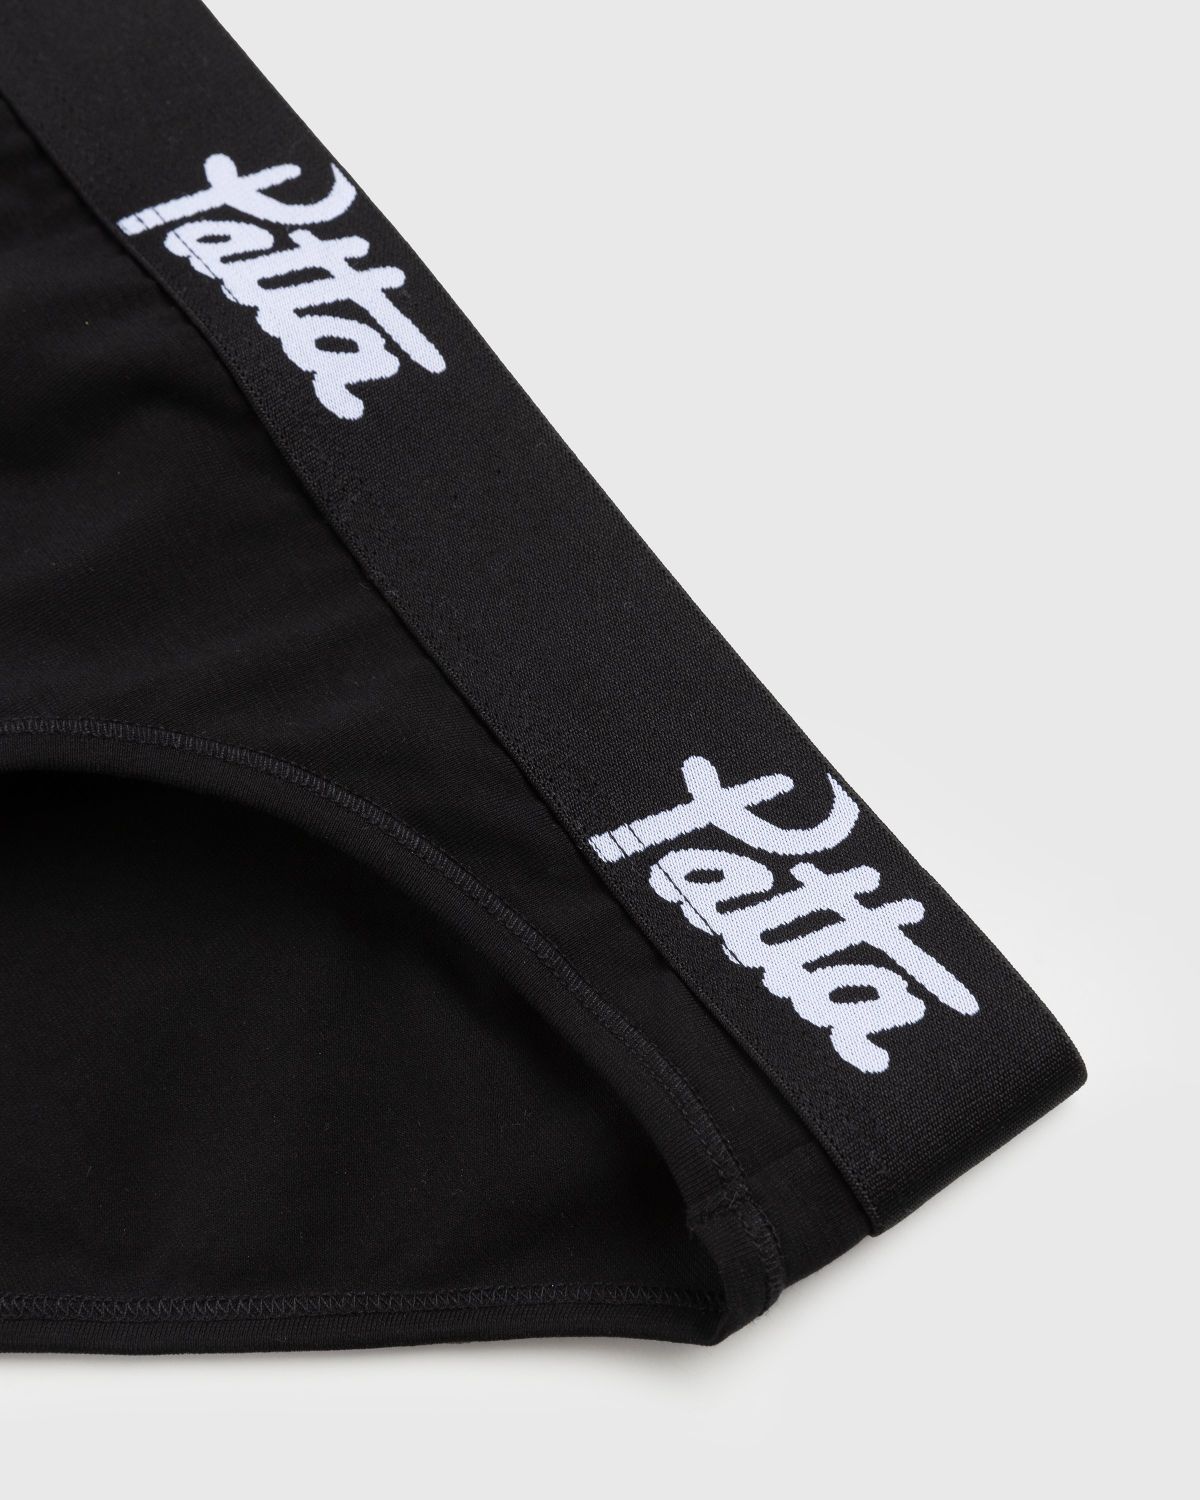 Patta – Women’s Underwear Brief Black | Highsnobiety Shop